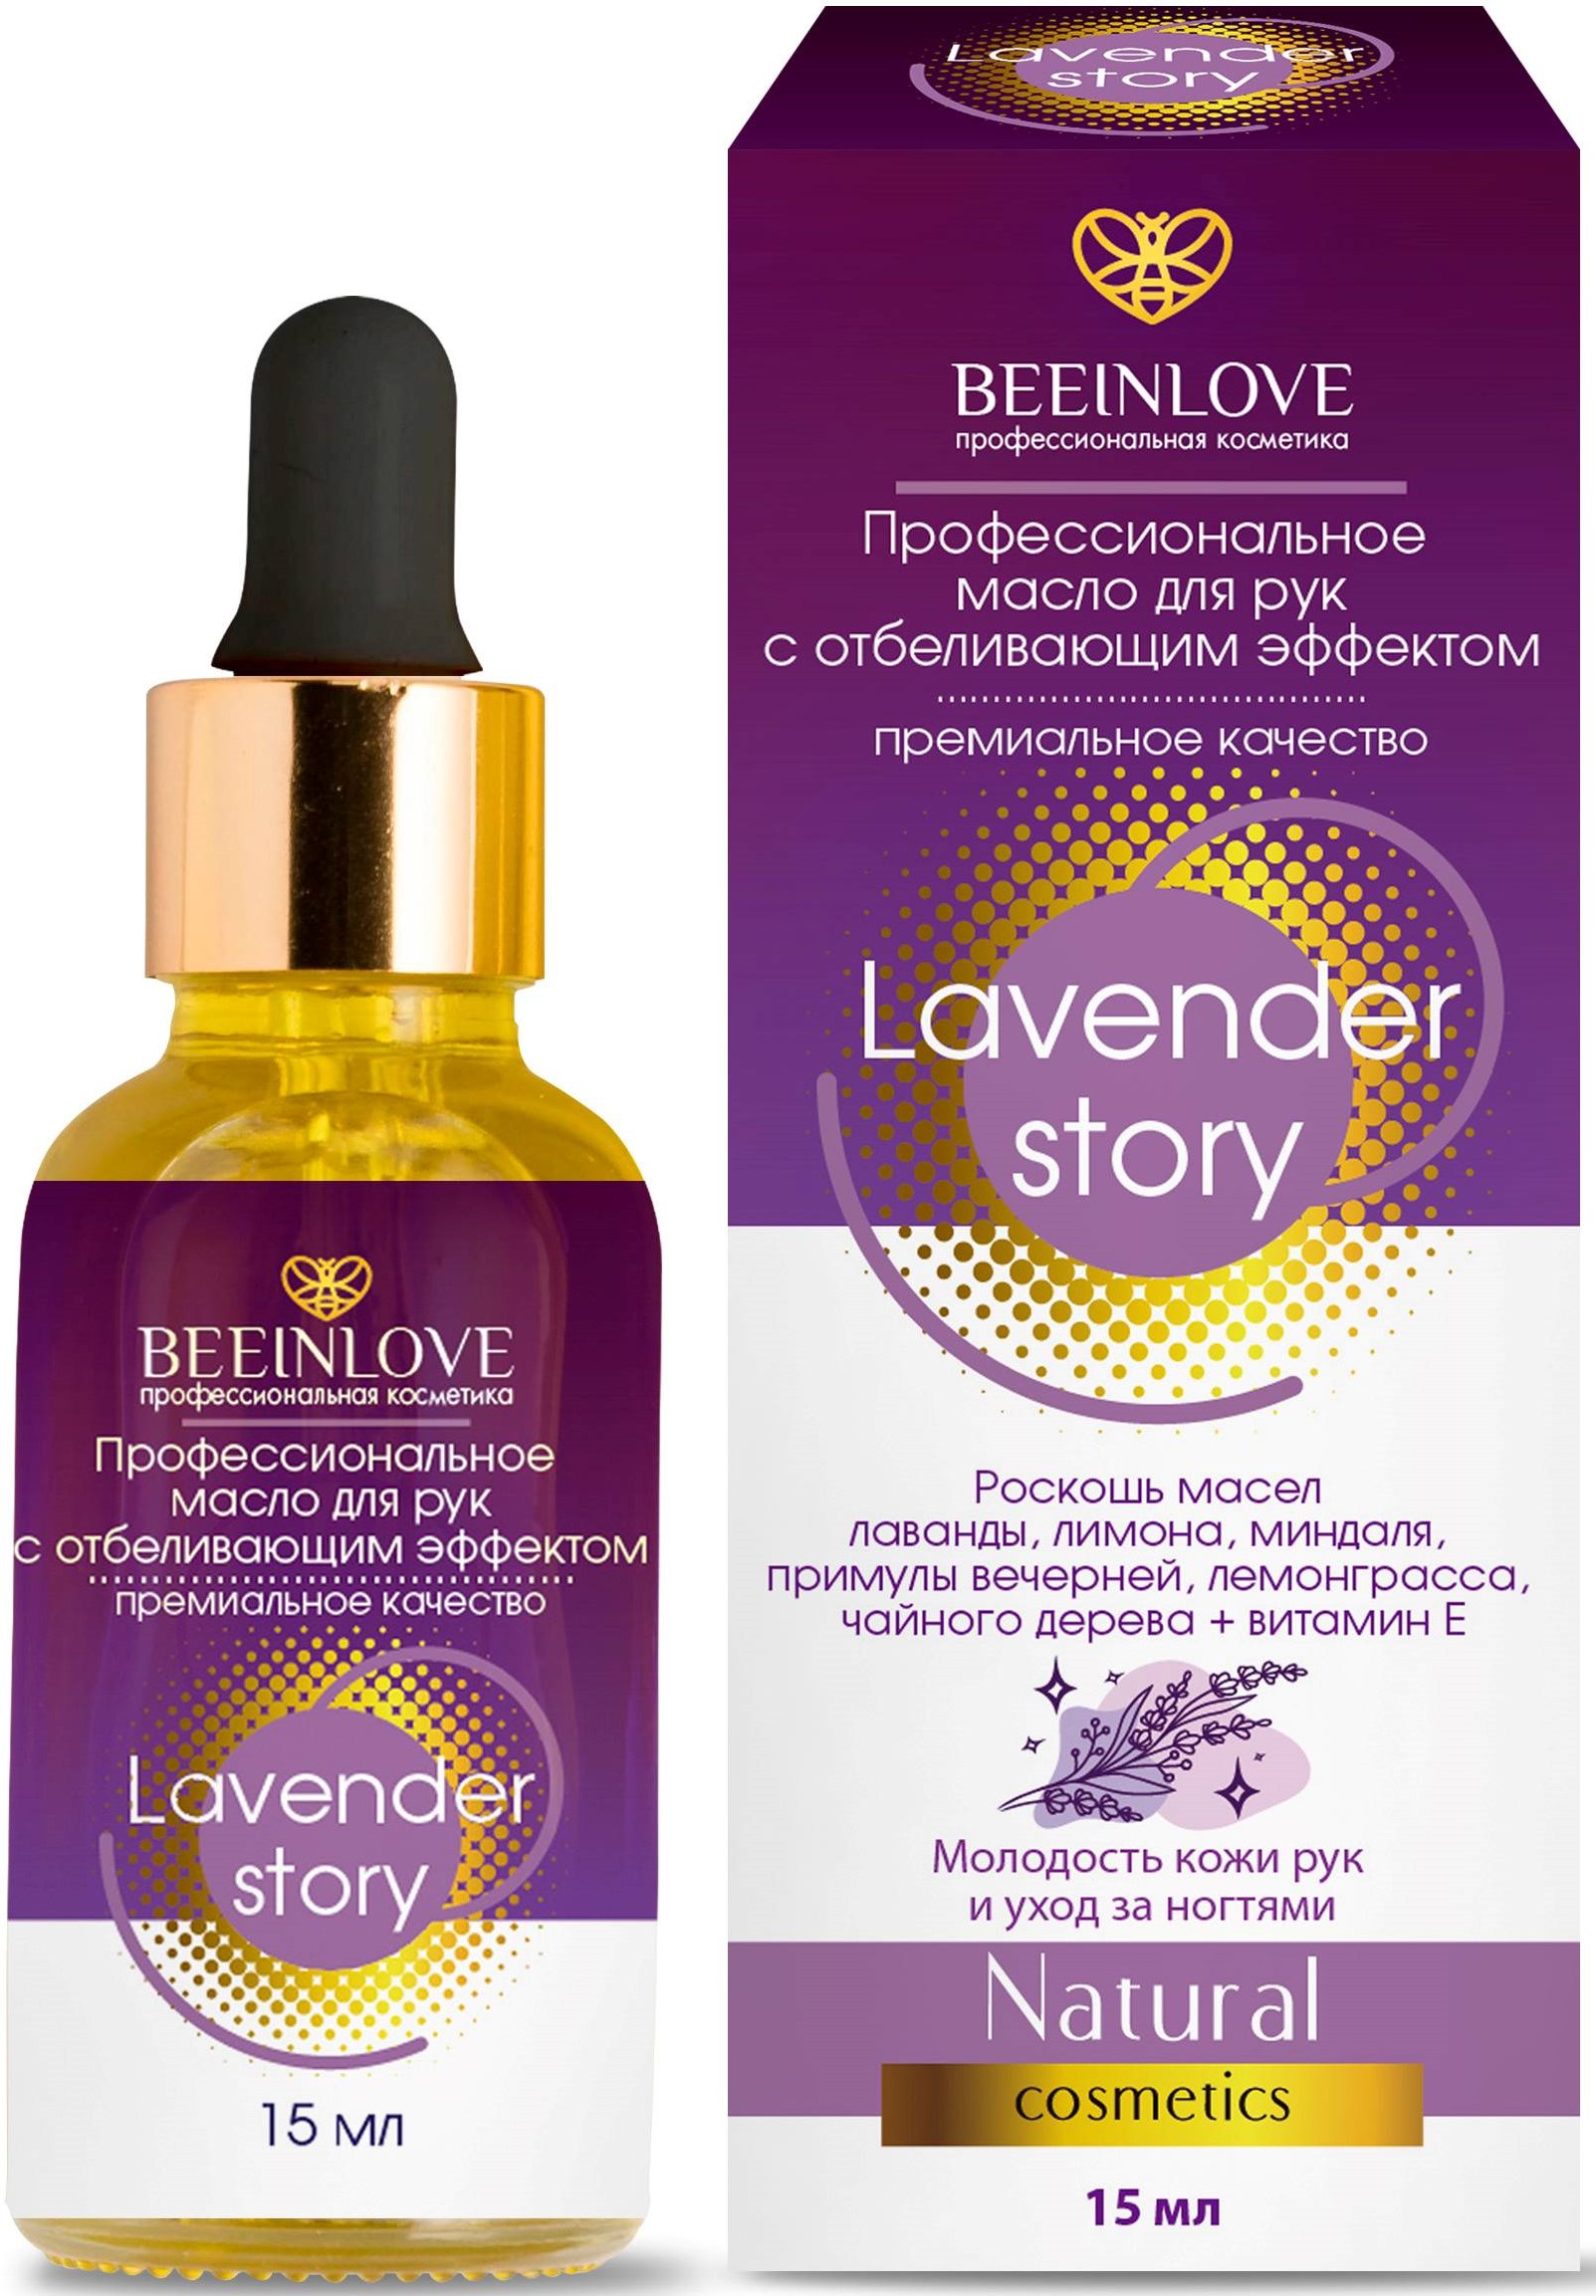 Масло для рук Beeinlove с отбеливающим эффектом профессиональное Lavender story 15 мл